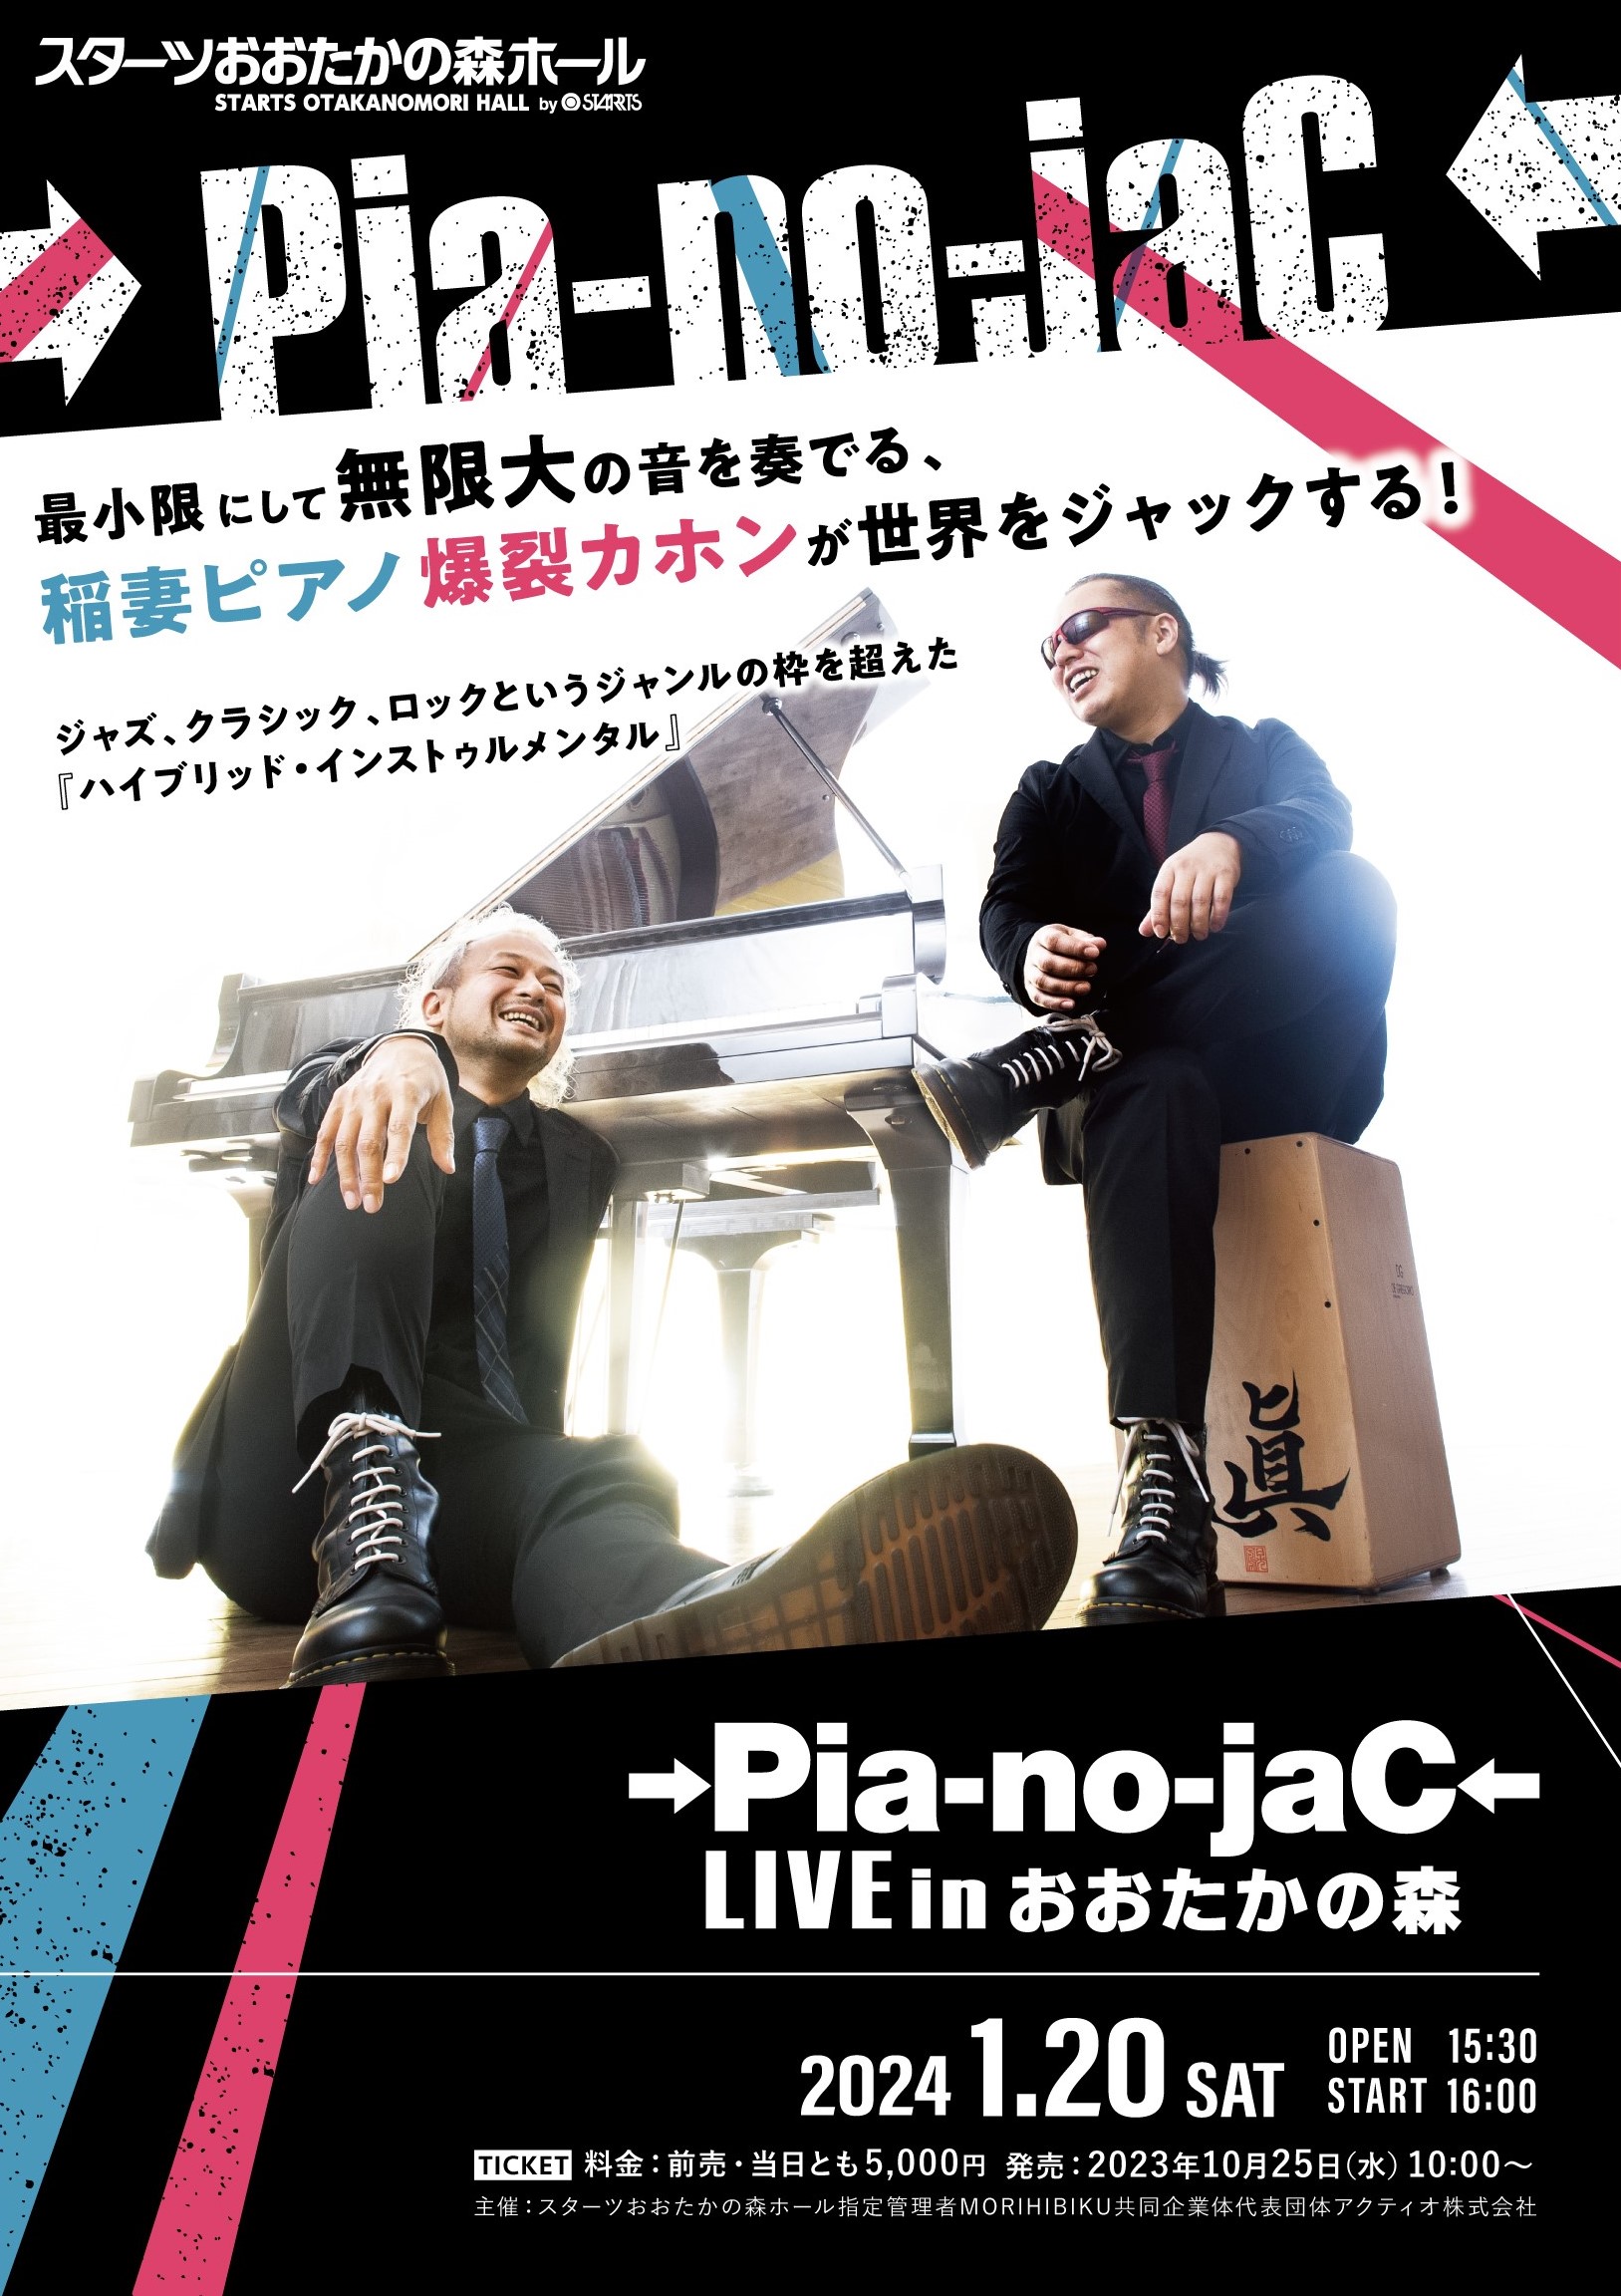 2つの楽器 ピアノとカホンでライブ空間をジャック 『→Pia-no-jaC